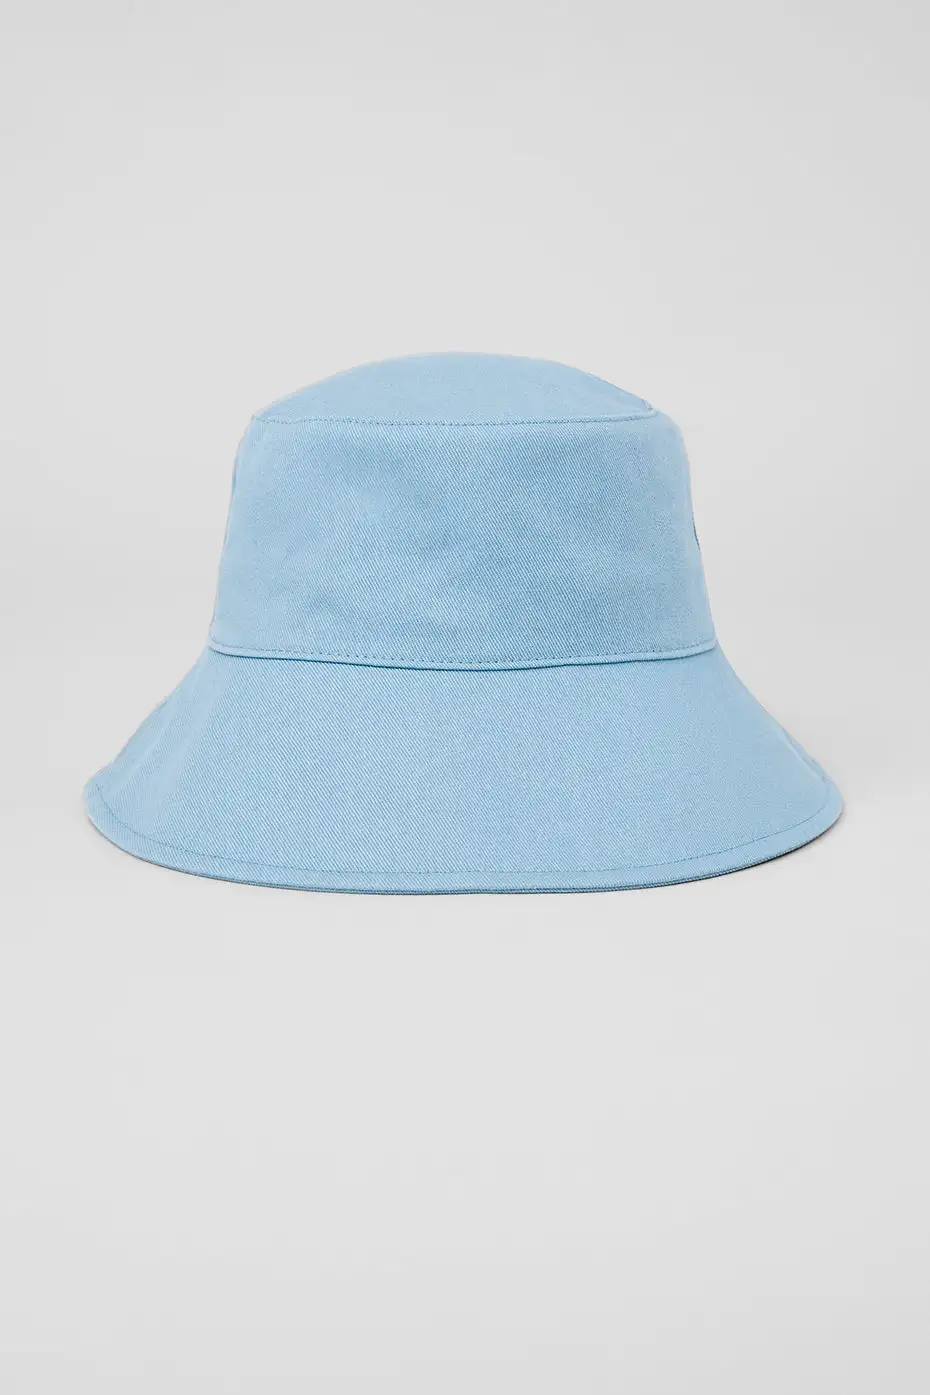 Lo Yoga Bucket Hat - Unisexe 100% coton Denim Upf 50 Place de voyage d'été embalable chapeau de soleil